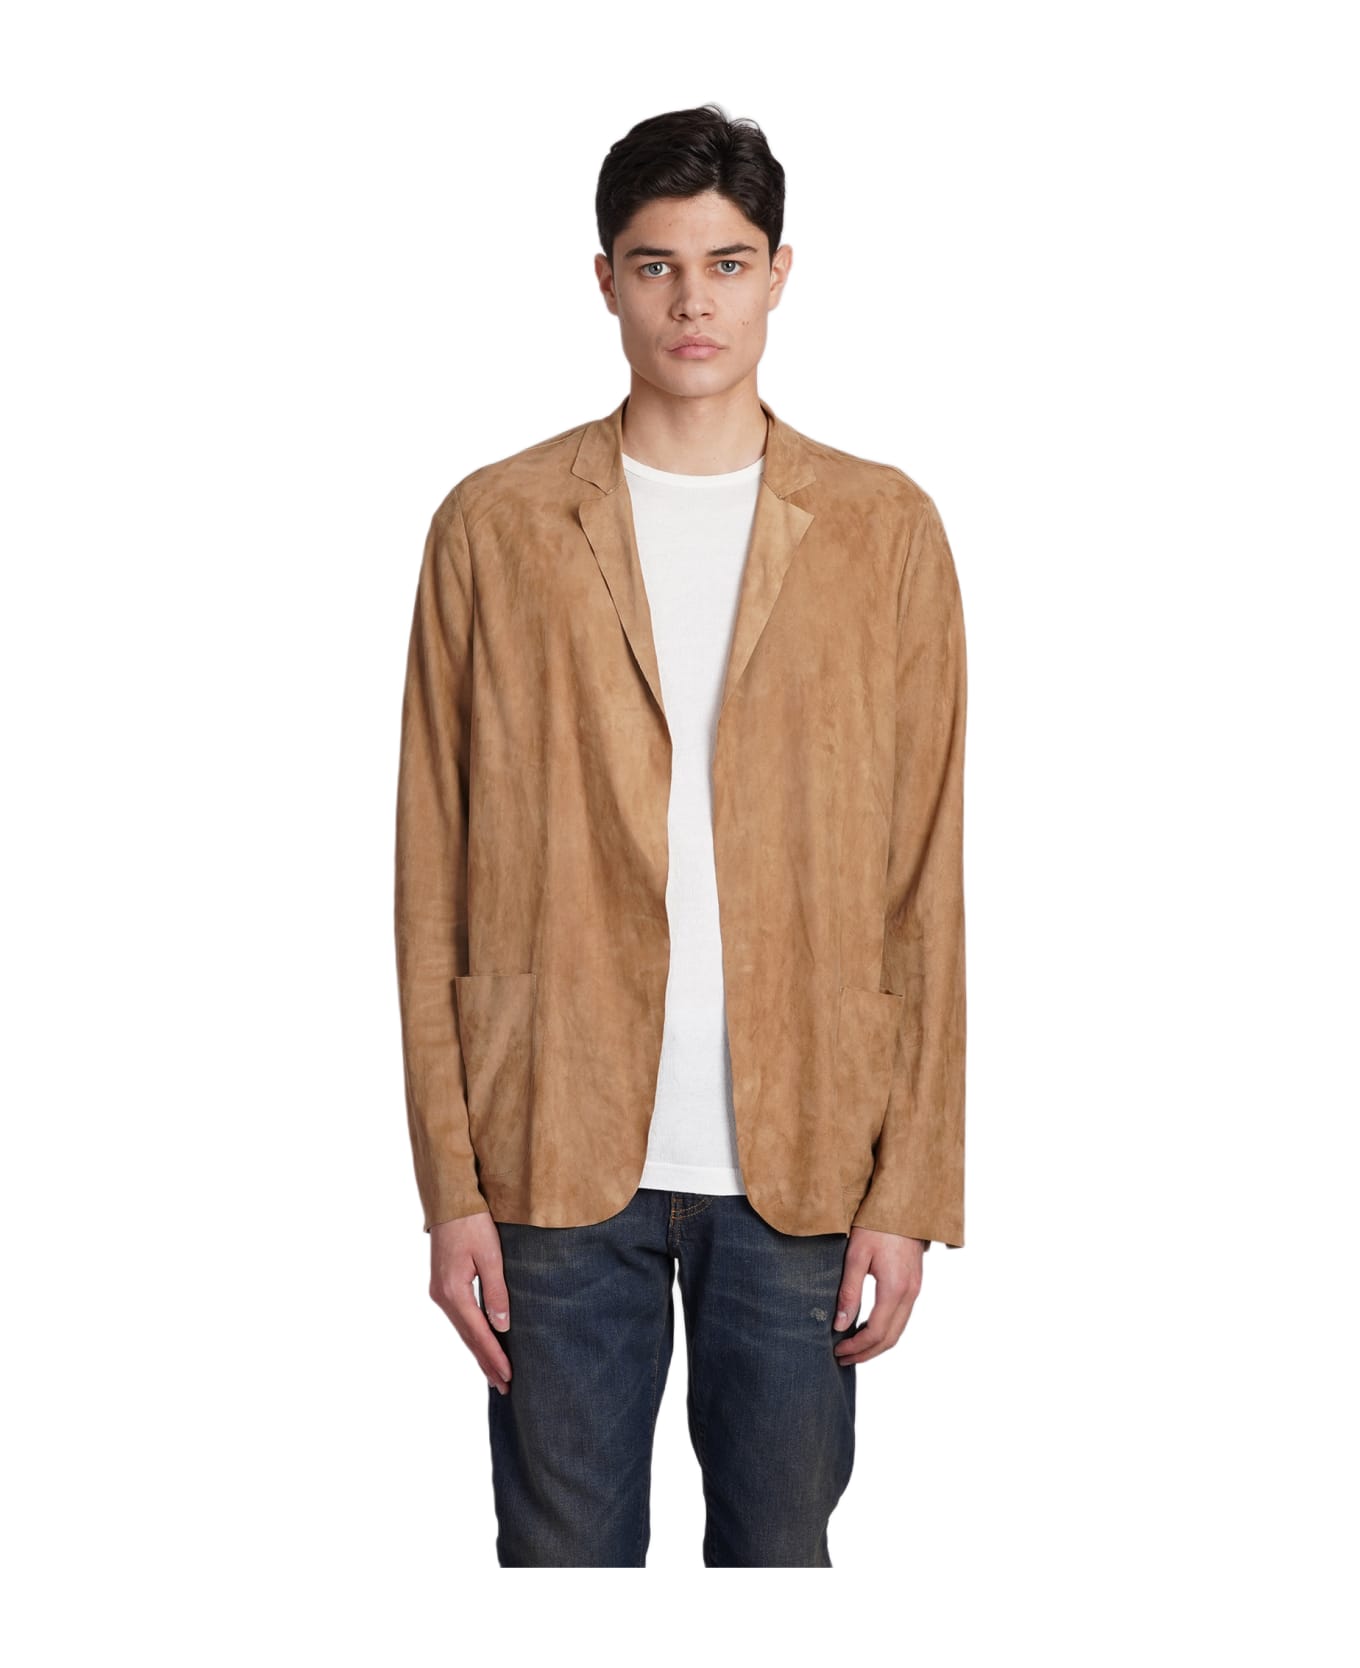 Salvatore Santoro Leather Jacket In Beige Suede - beige